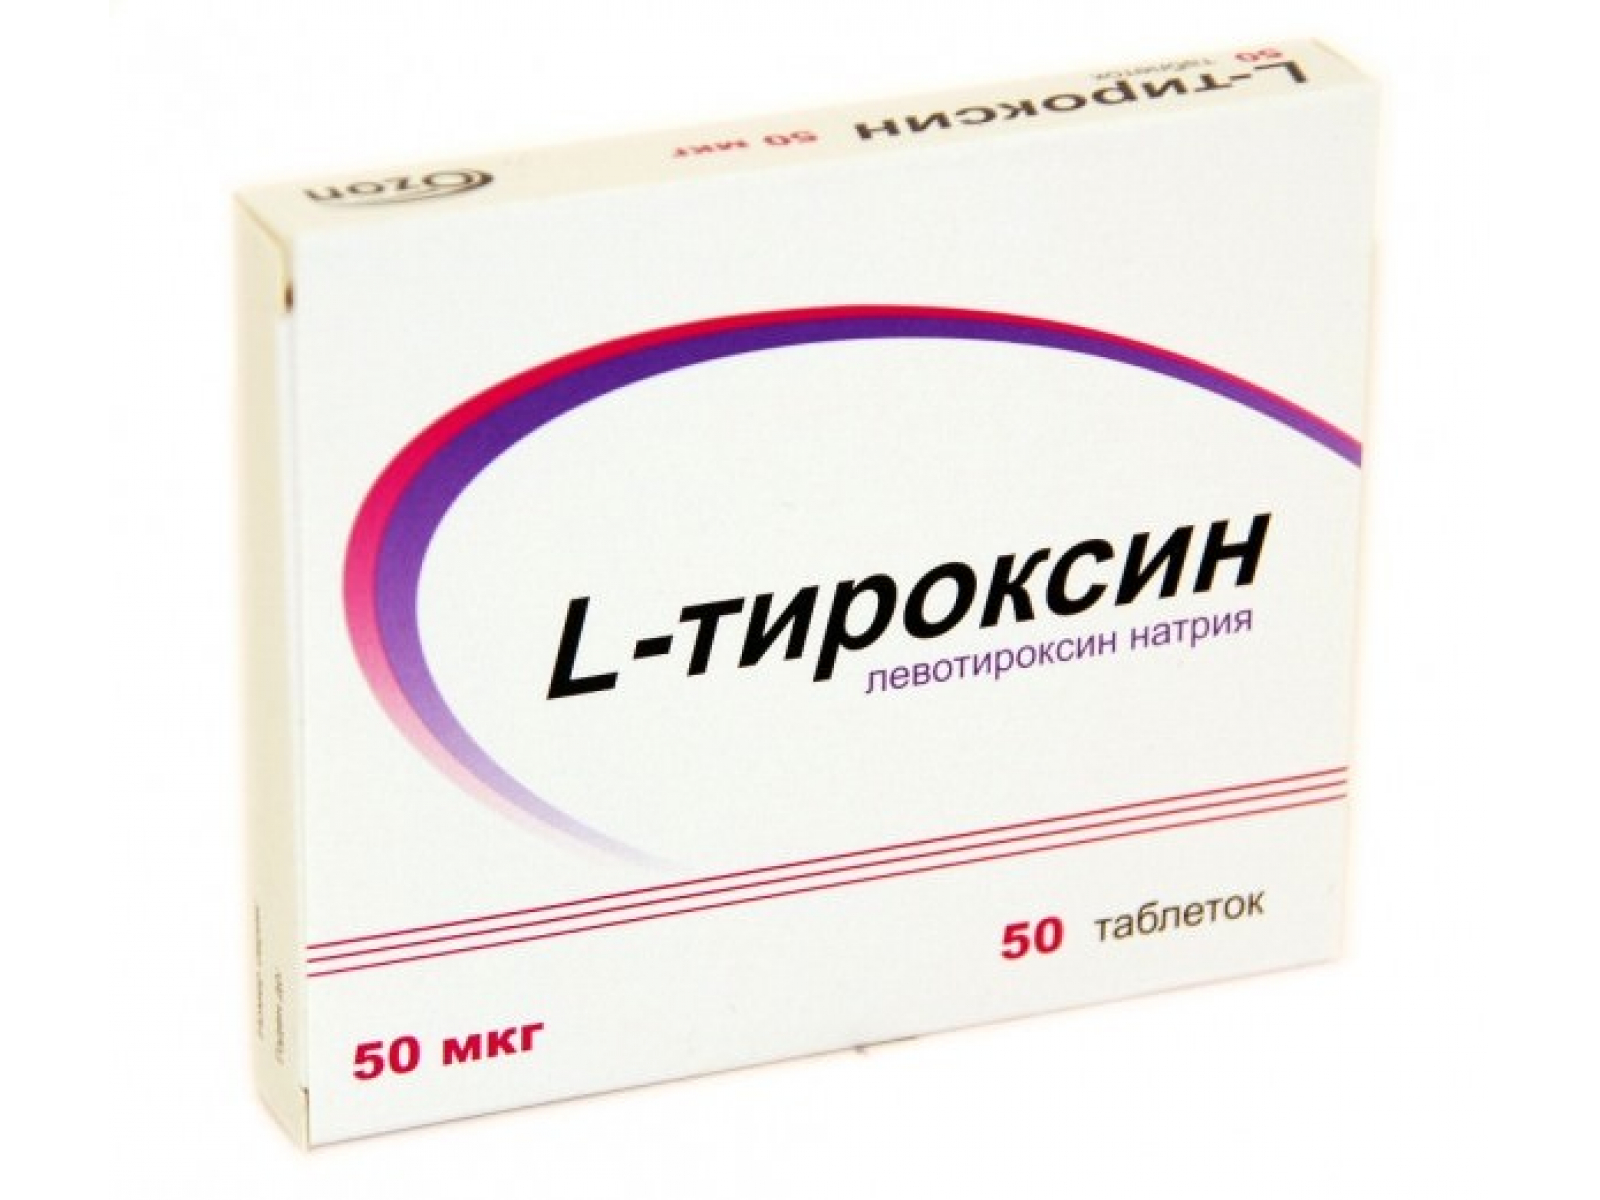 Как лечить щитовидную железу средством l-тироксин 50?